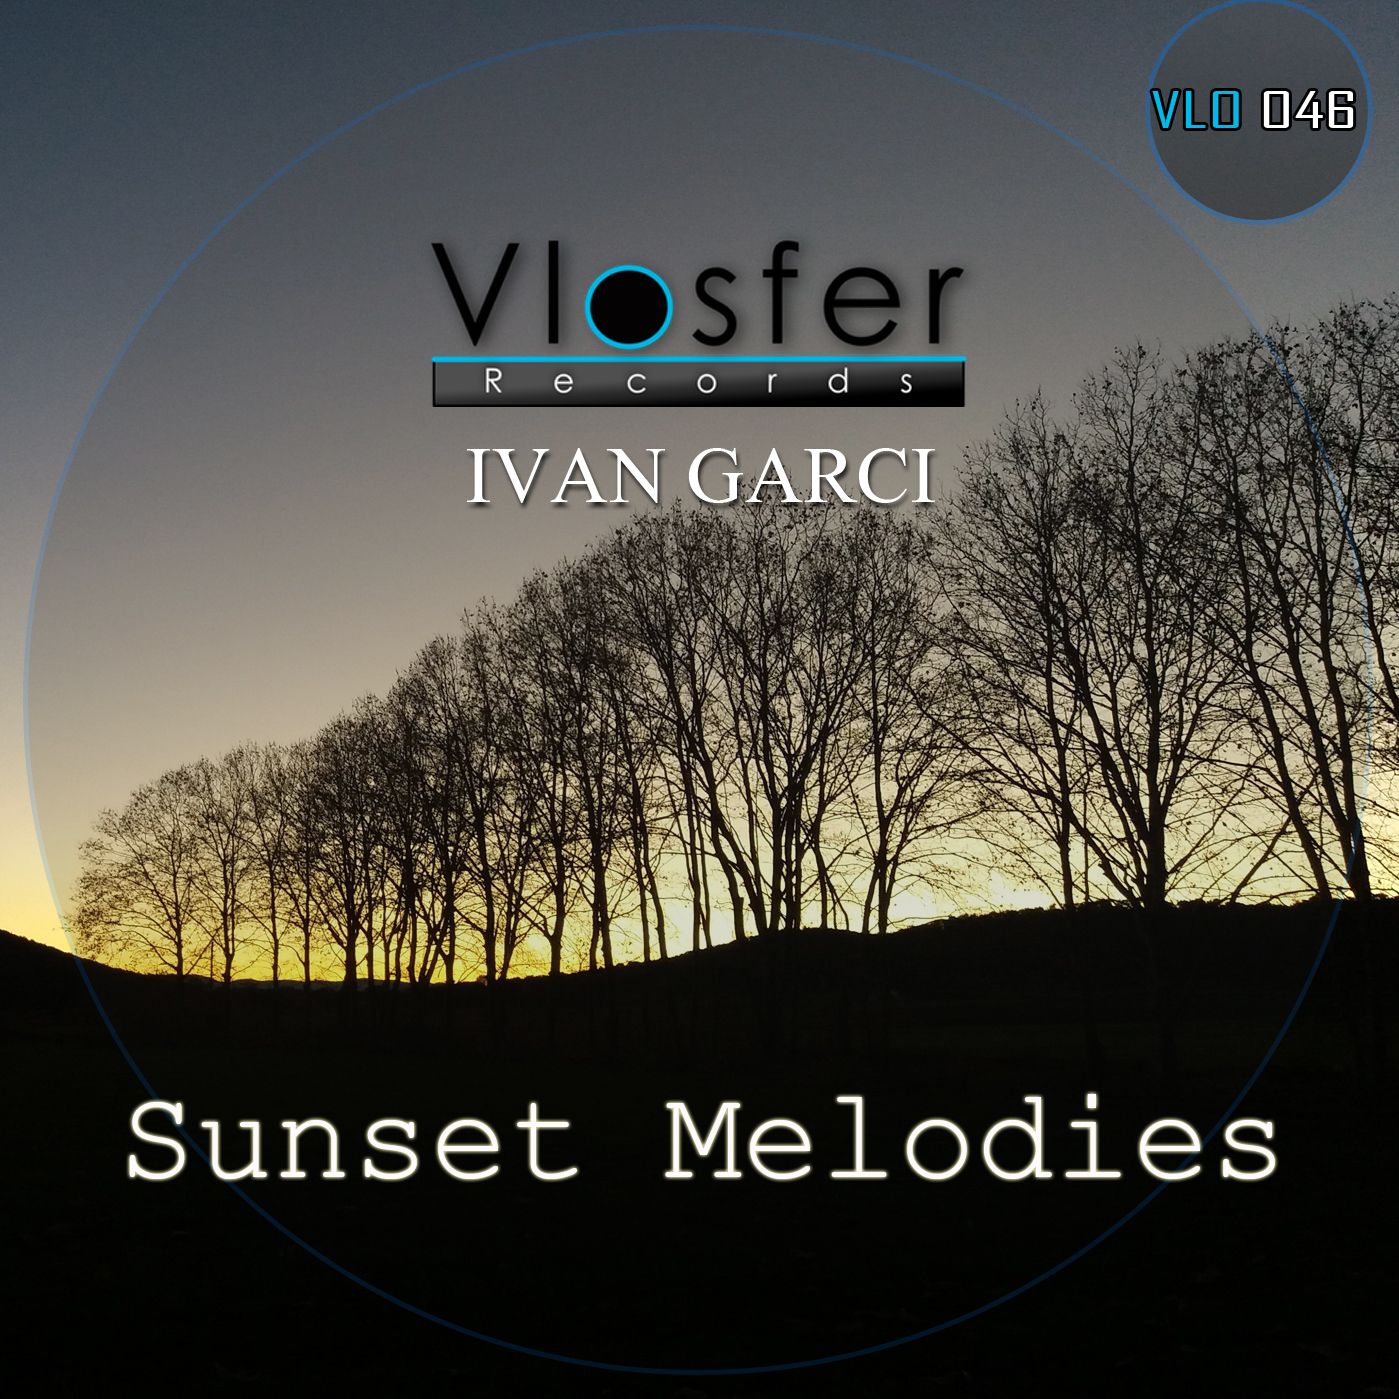 ڊائون لو Clear - Ivan Garci (low quality sound) Vlosfer records.